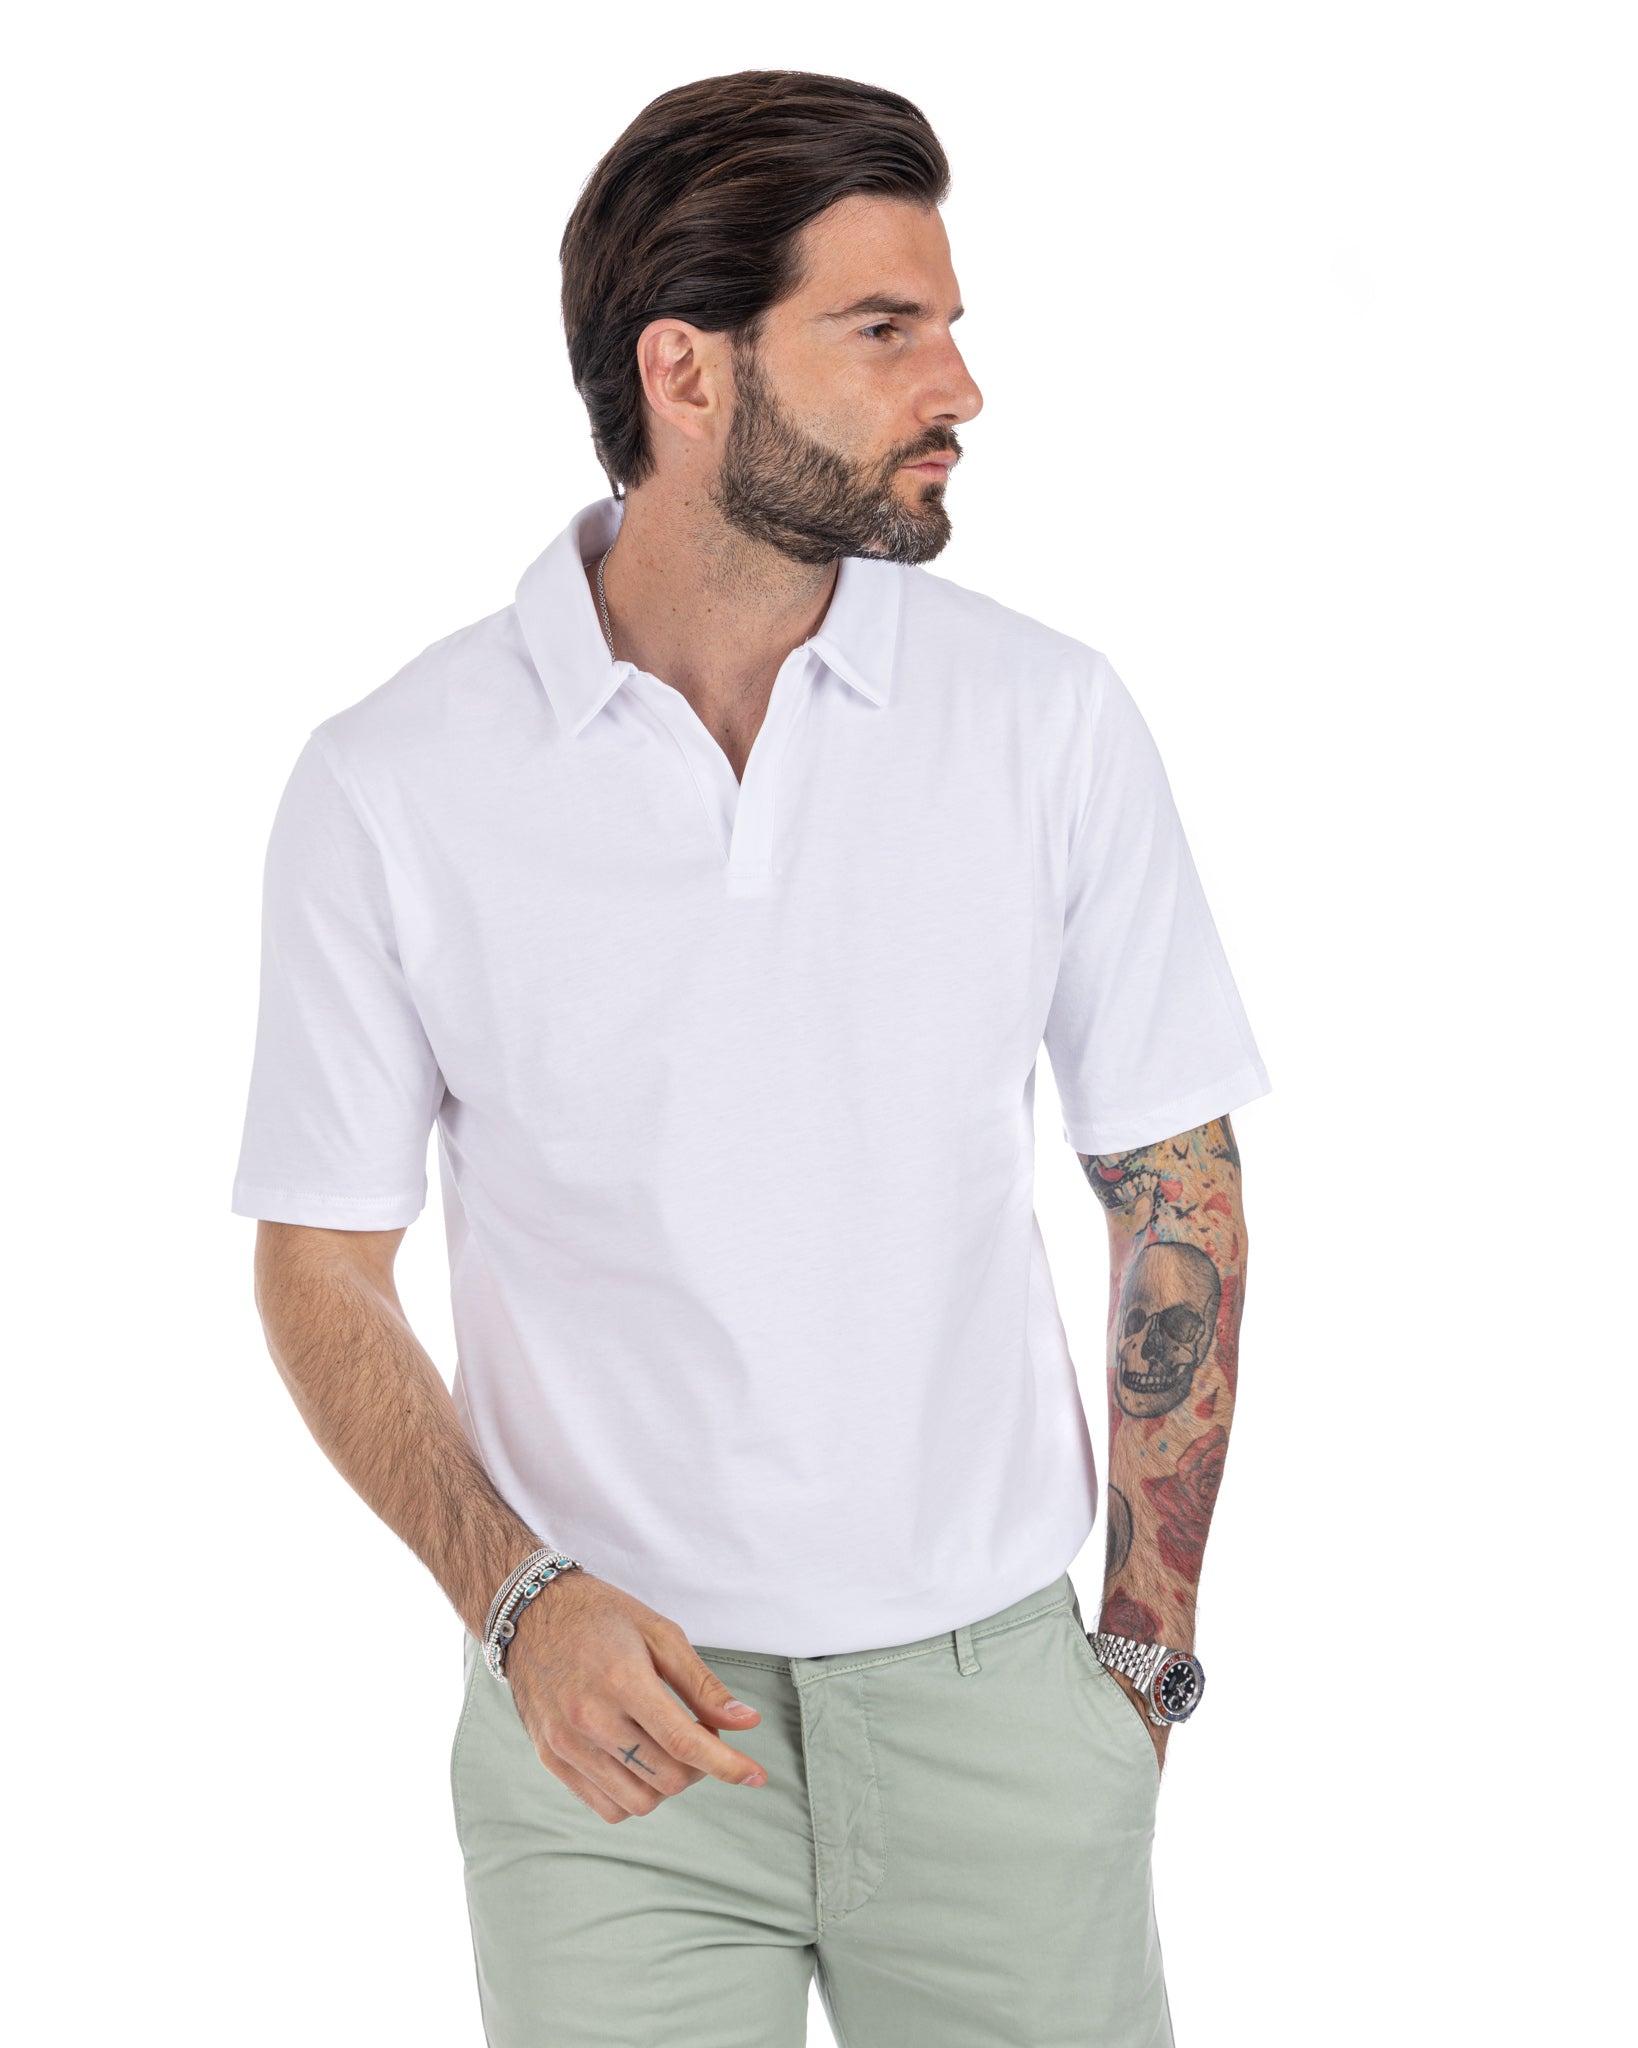 Drew - basic white cotton polo shirt